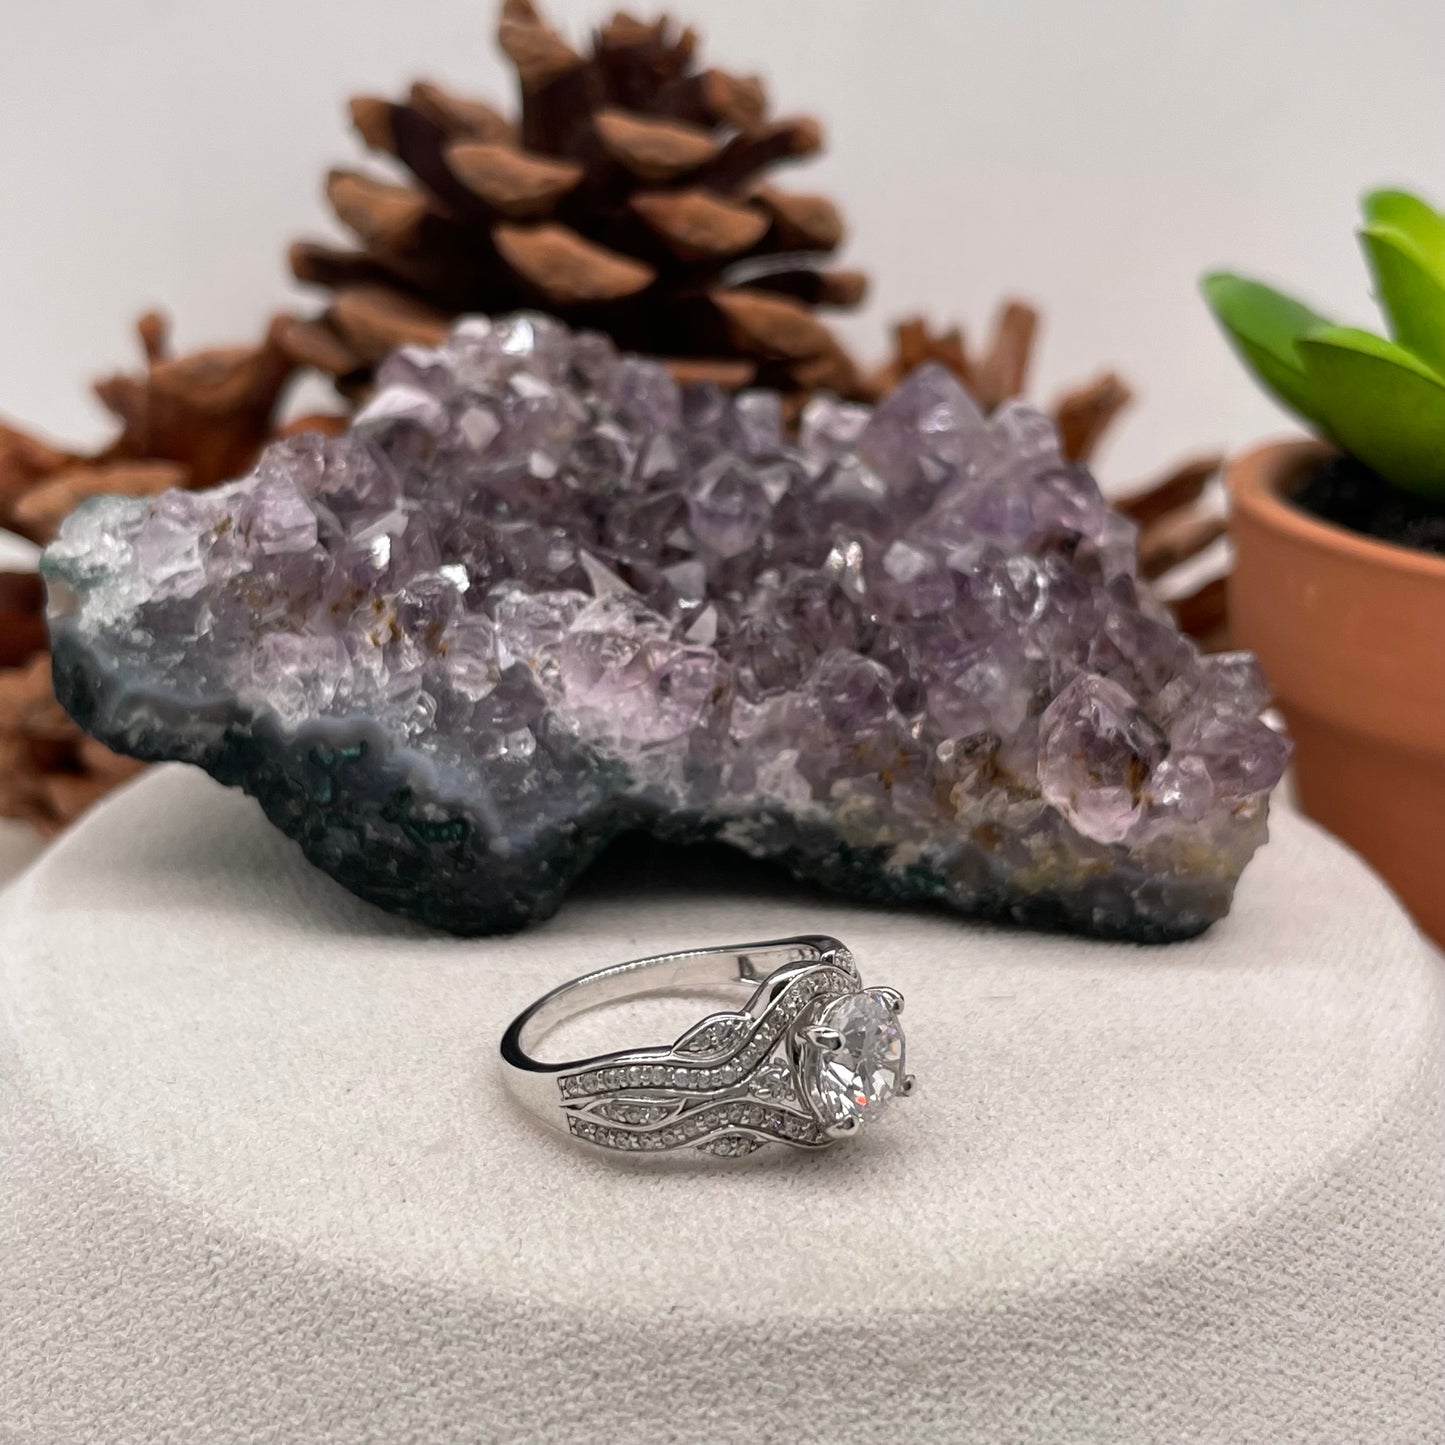 0.83 Carat Round Brilliant Lab Created / Naturel Diamond Engagement Ring Diamond Ring